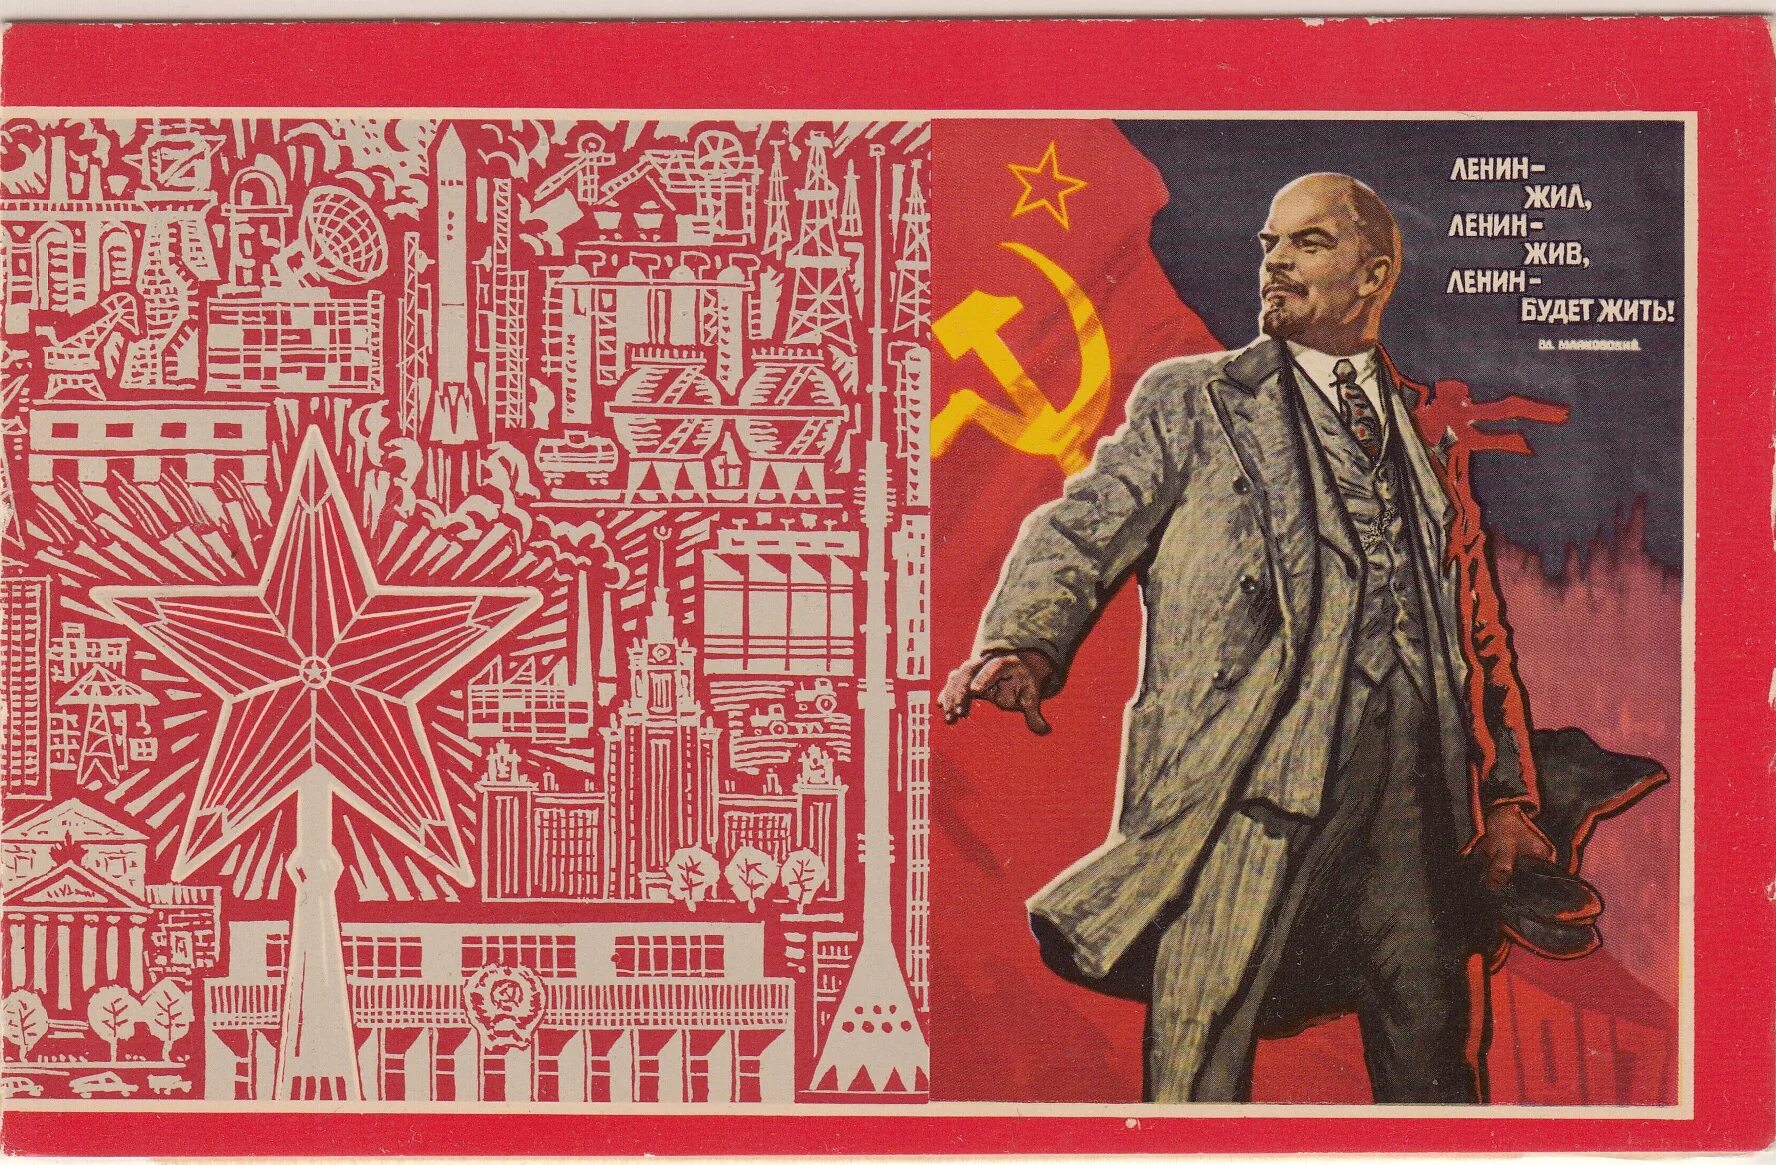 Плакат Ленин жил Ленин жив Ленин будет жить. Ленин плакат. Советские плакаты с Лениным. Ленин жил Ленин жив.